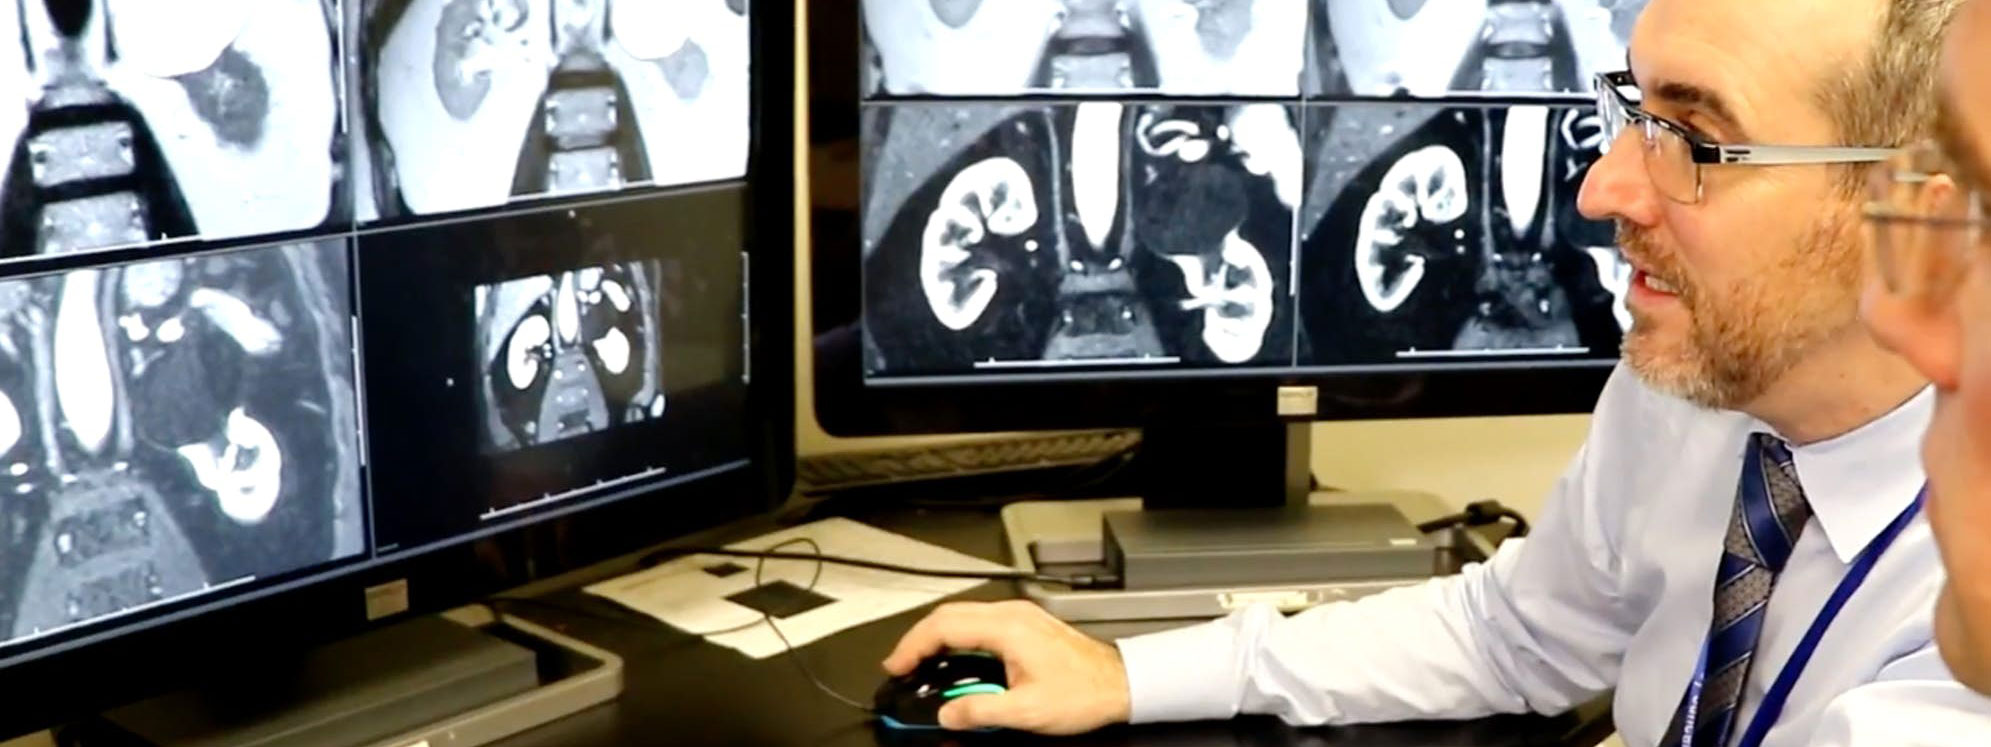 Kỹ thuật MRI tiên tiến sẽ giúp xác định khối u ung thư mà không cần sinh thiết